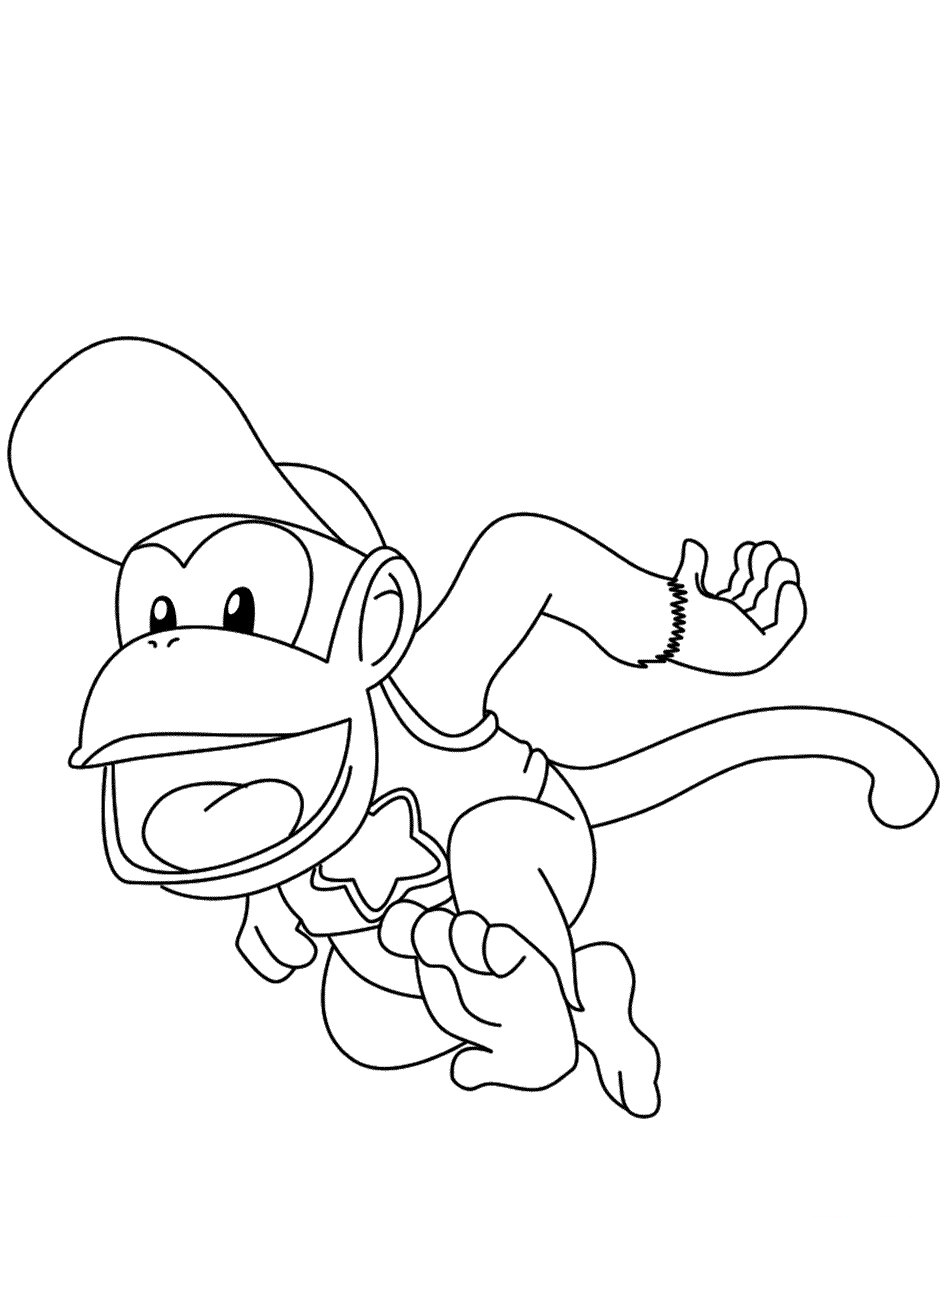 Diddy Kong está usando um boné e está fugindo de Diddy Kong